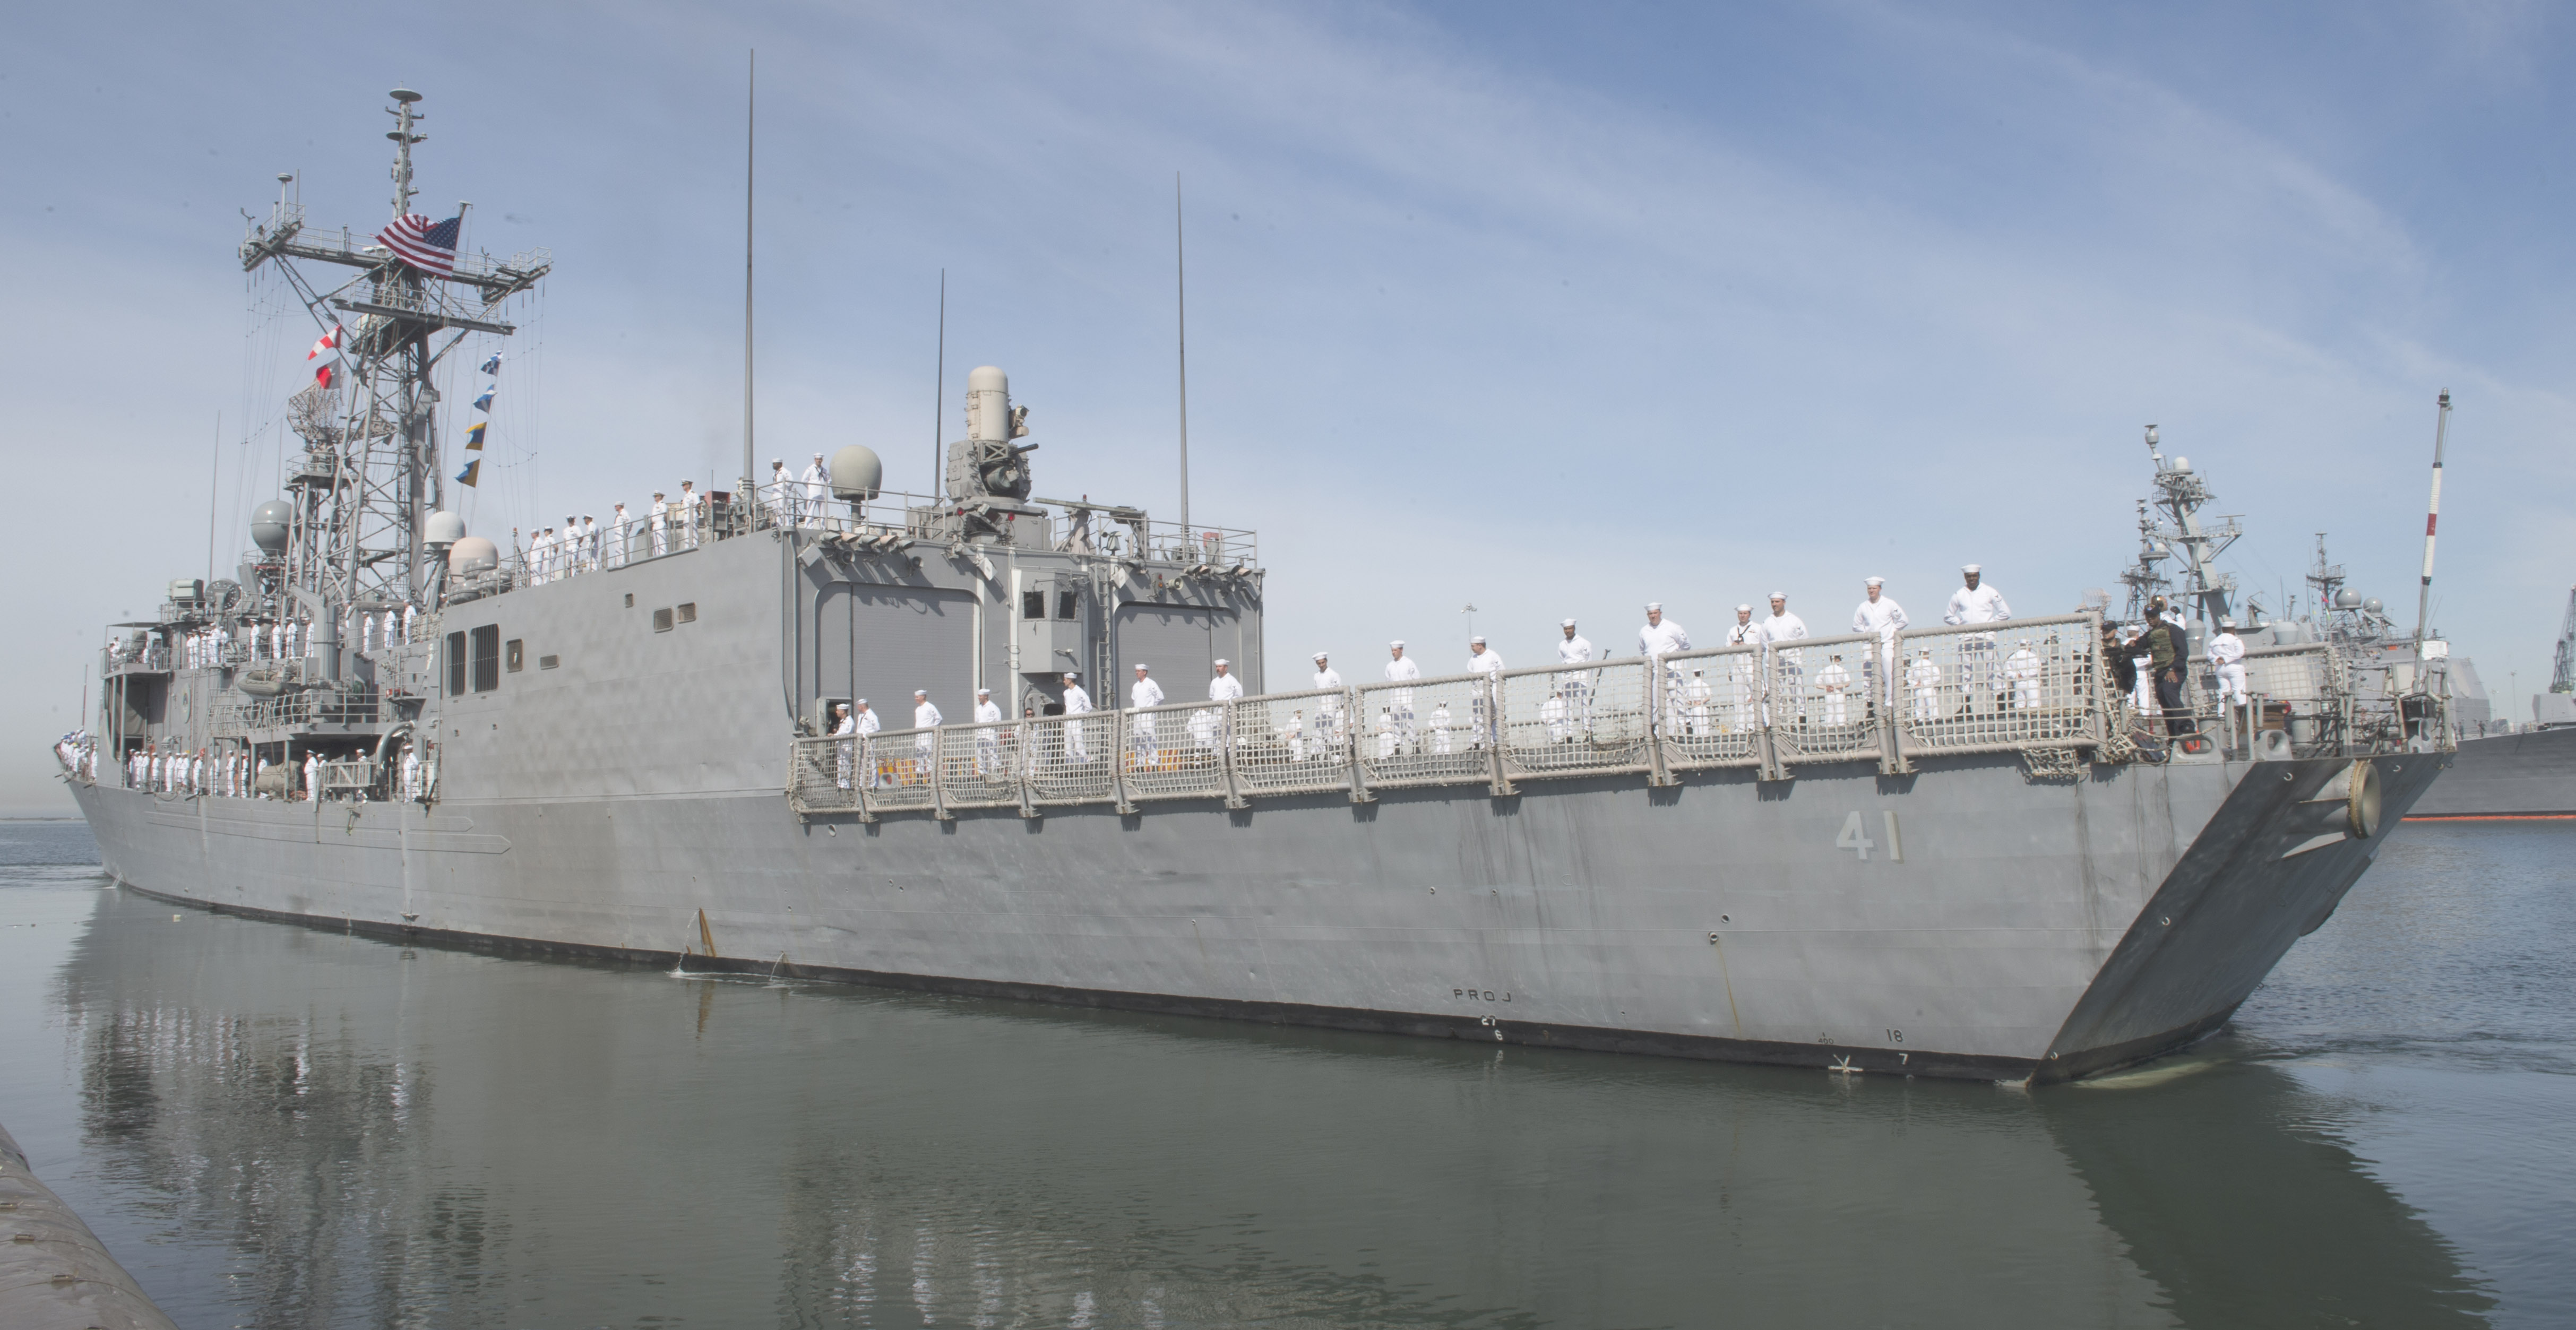 USS McCLUSKY FFG-41 Auslaufen San Diego am 10.04.2014 Bild: U.S. Navy